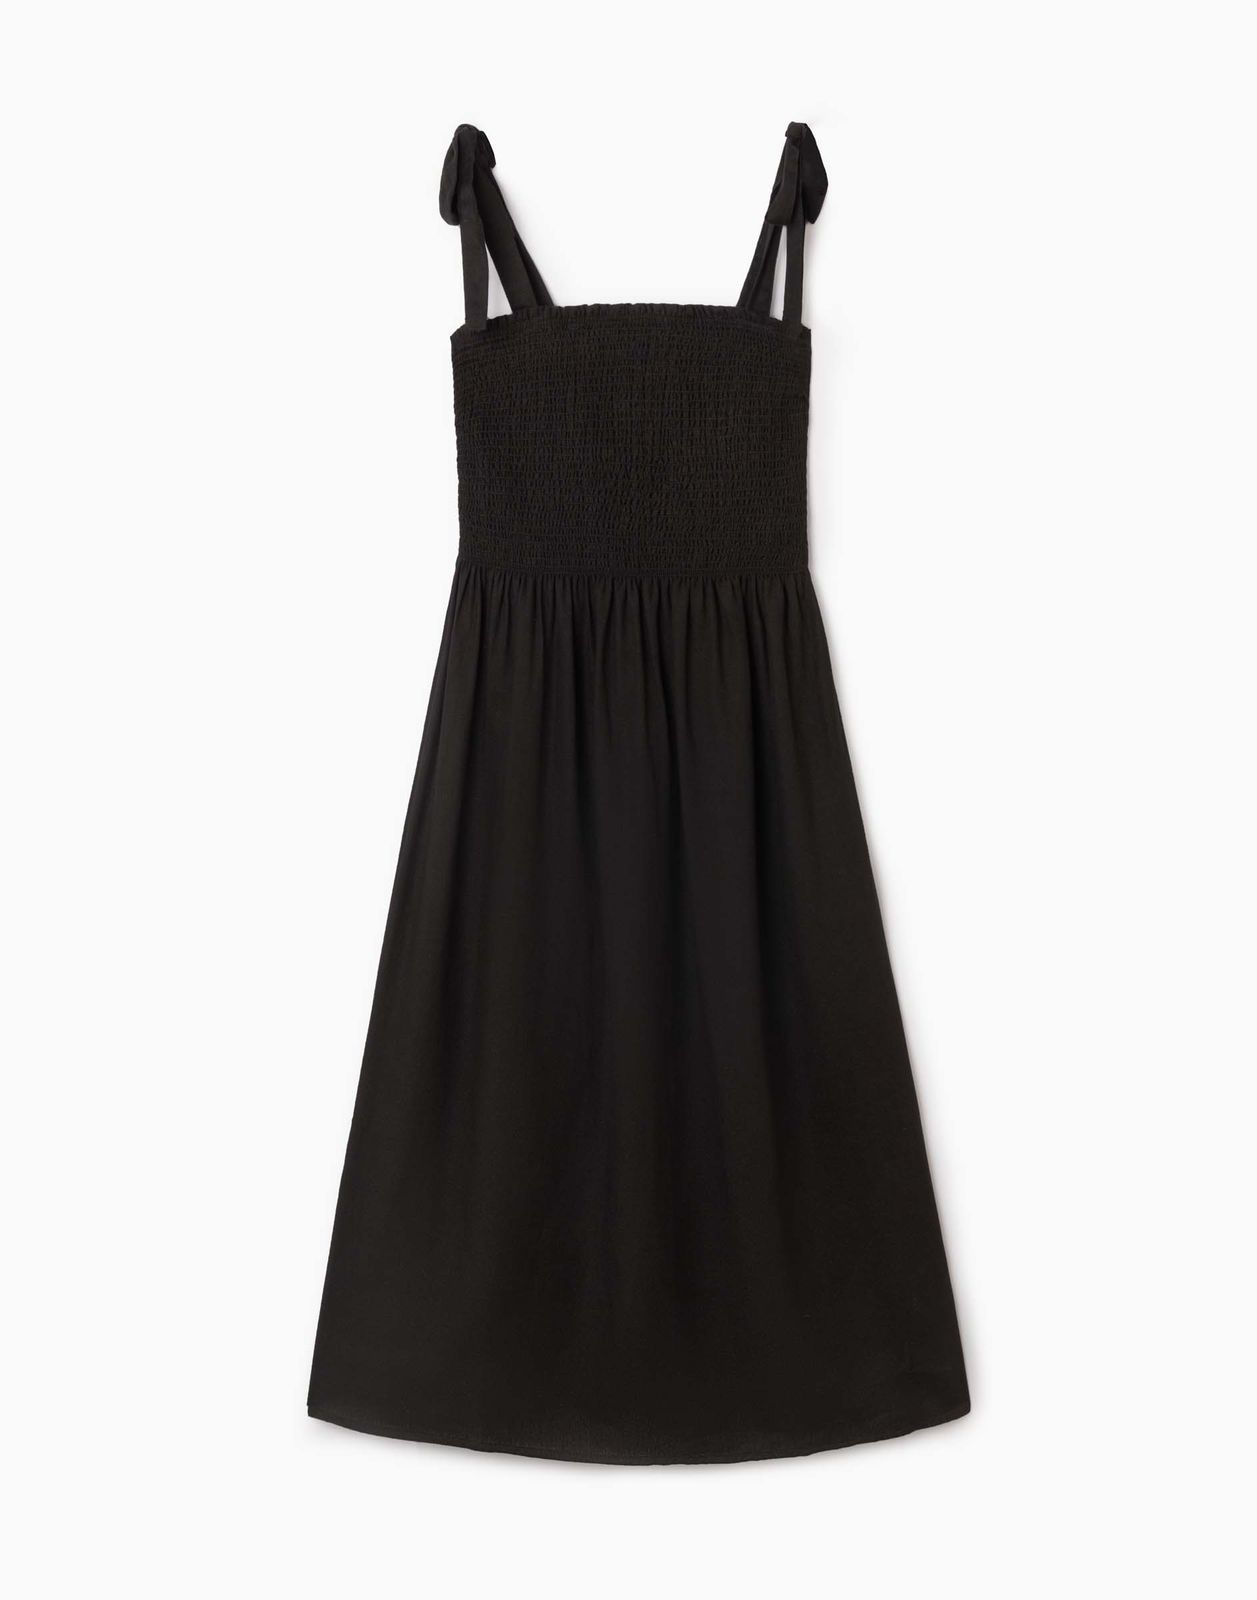 Платье женское Gloria Jeans GDR028414 черный XS/164